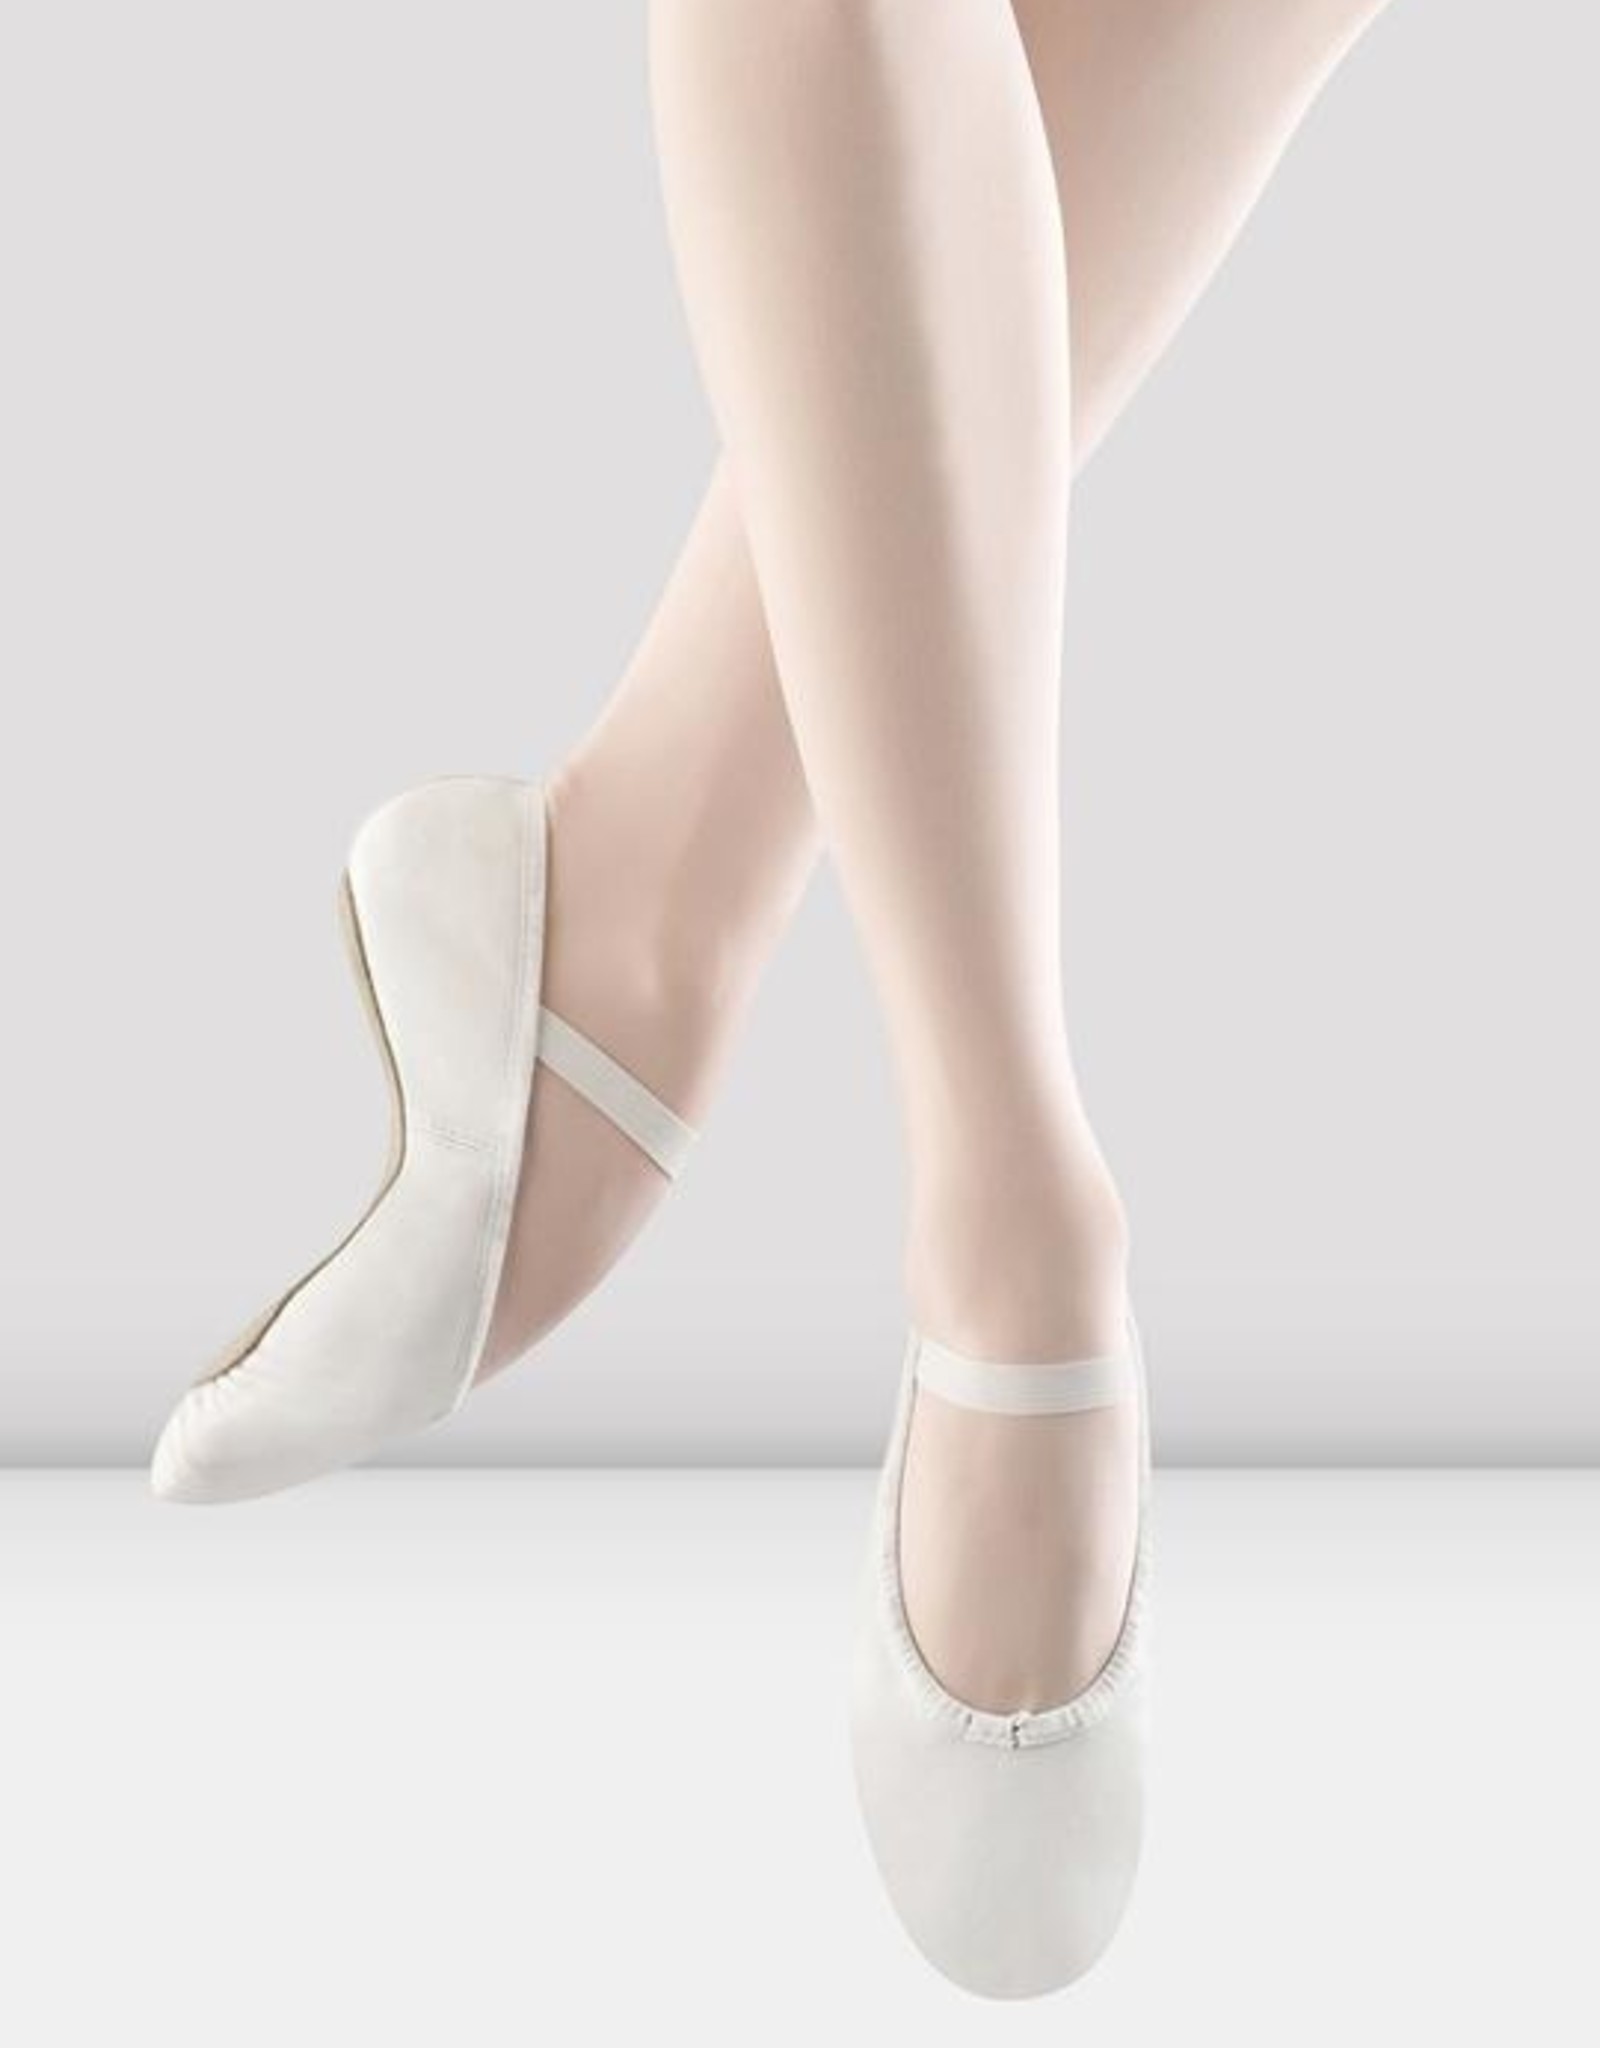 Bloch Ladies' Dansoft Ballet Shoes (Black & White)